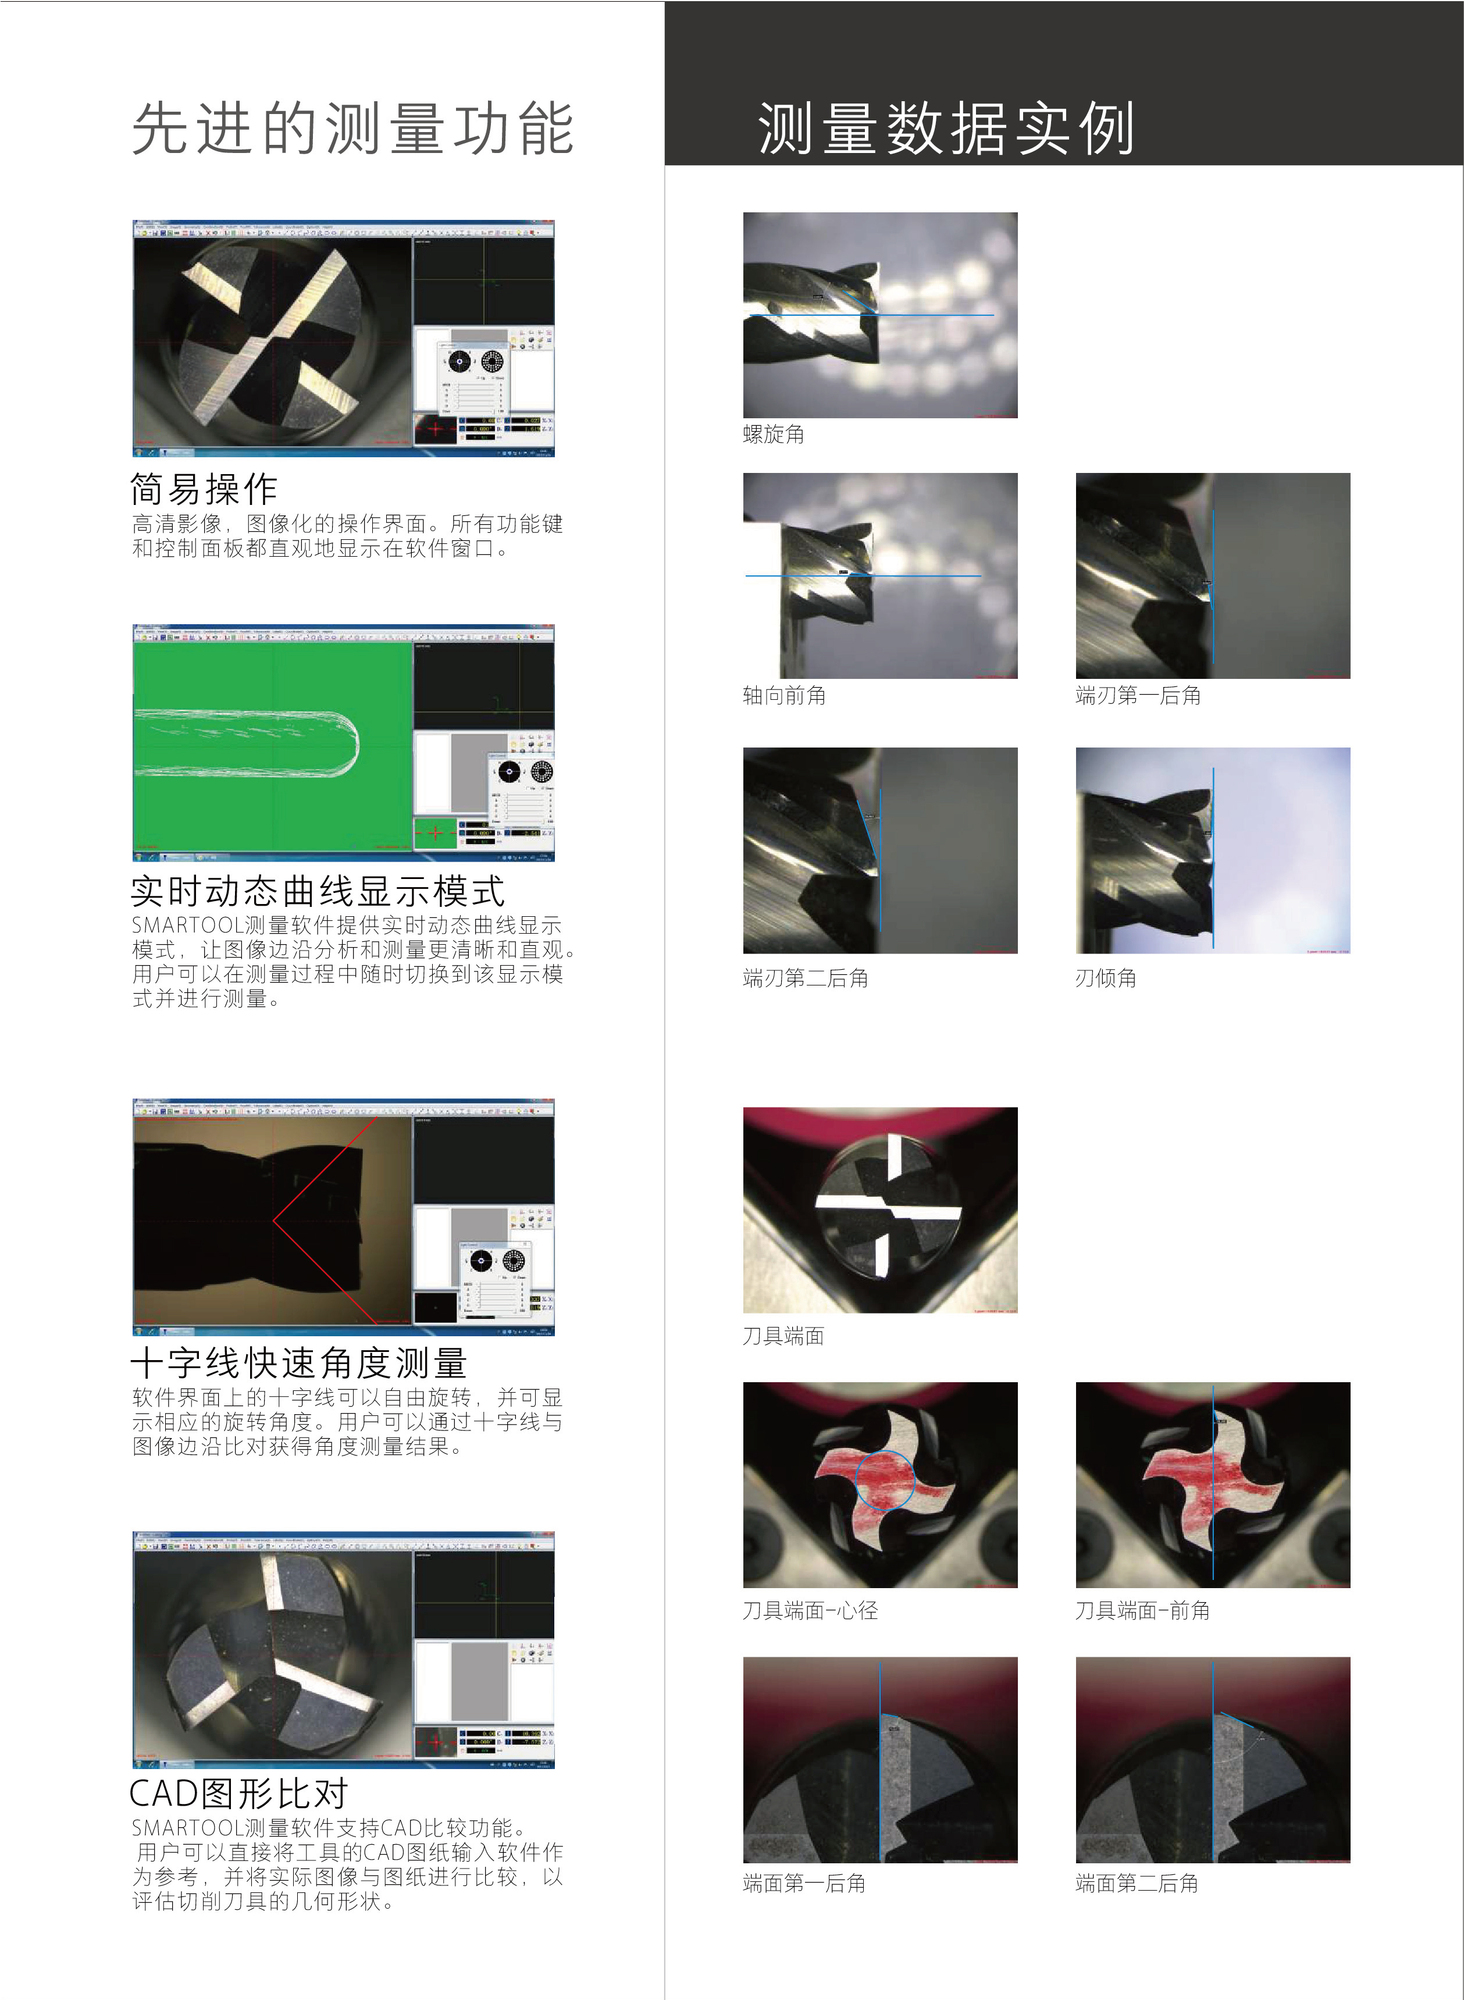 拓精仪器集团-刀具检测系统-07.jpg